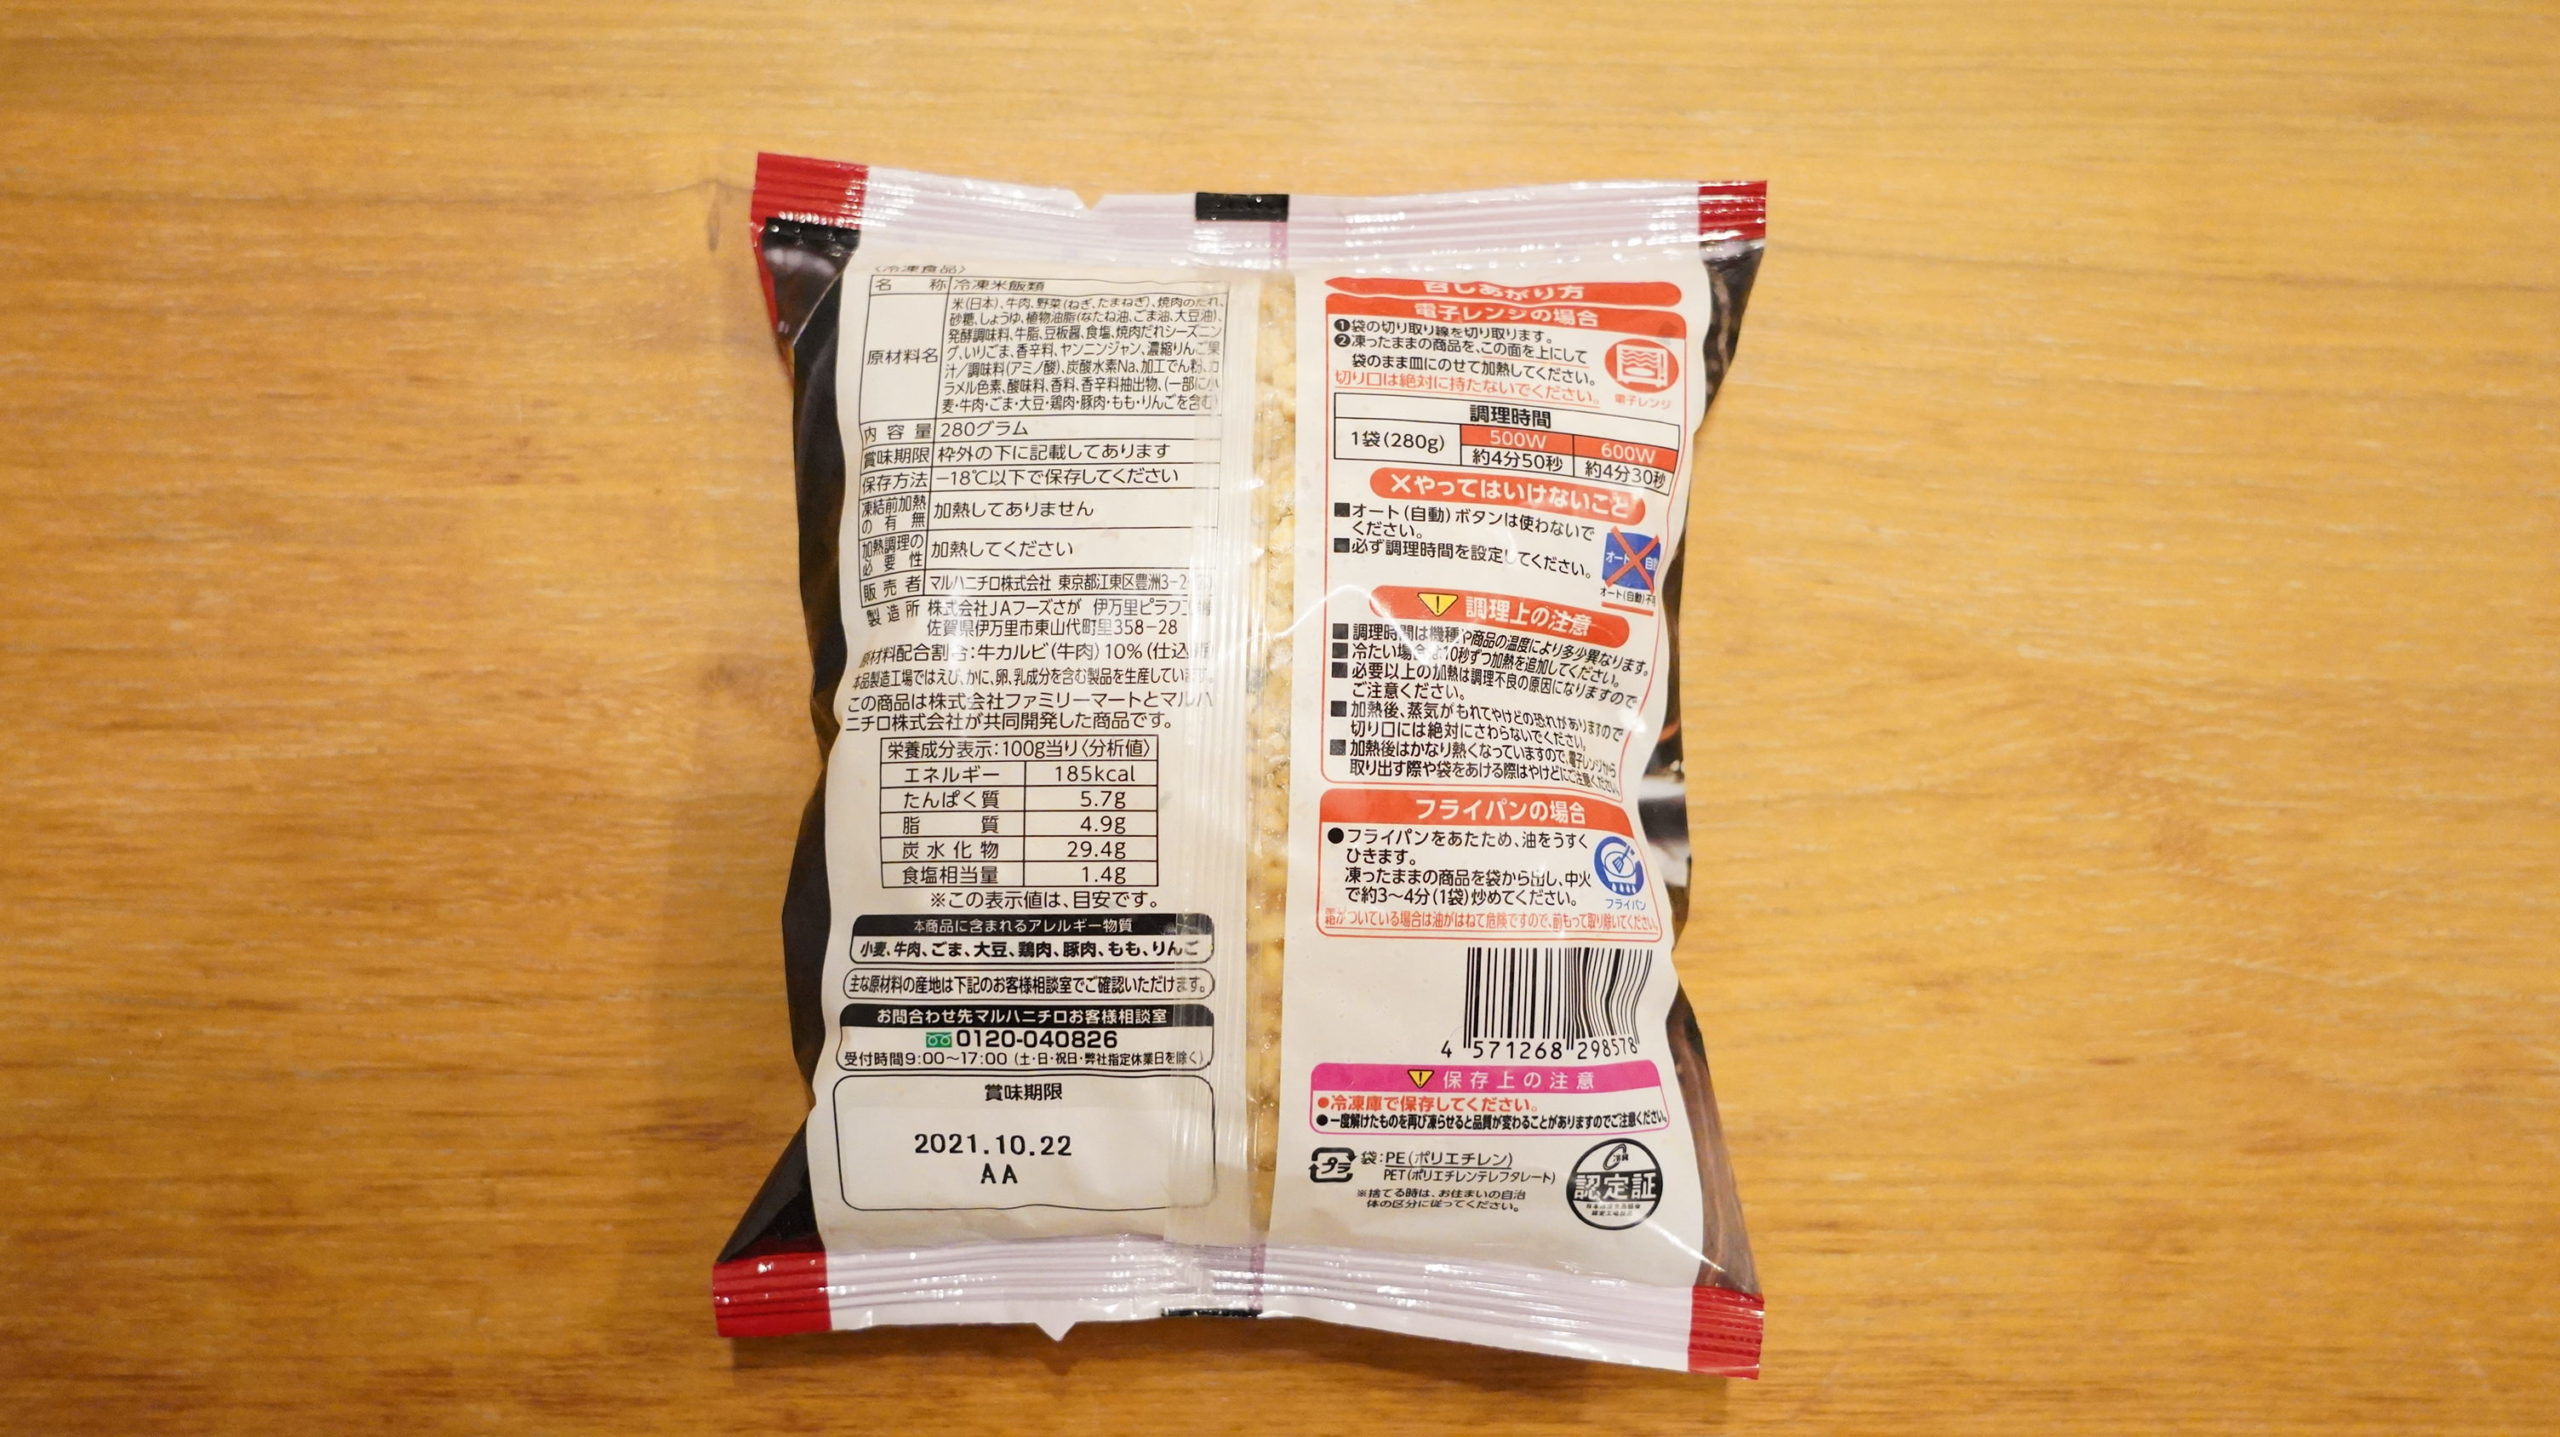 ファミリーマートの冷凍食品「甘口たれの牛カルビごはん」のパッケージ裏面の写真